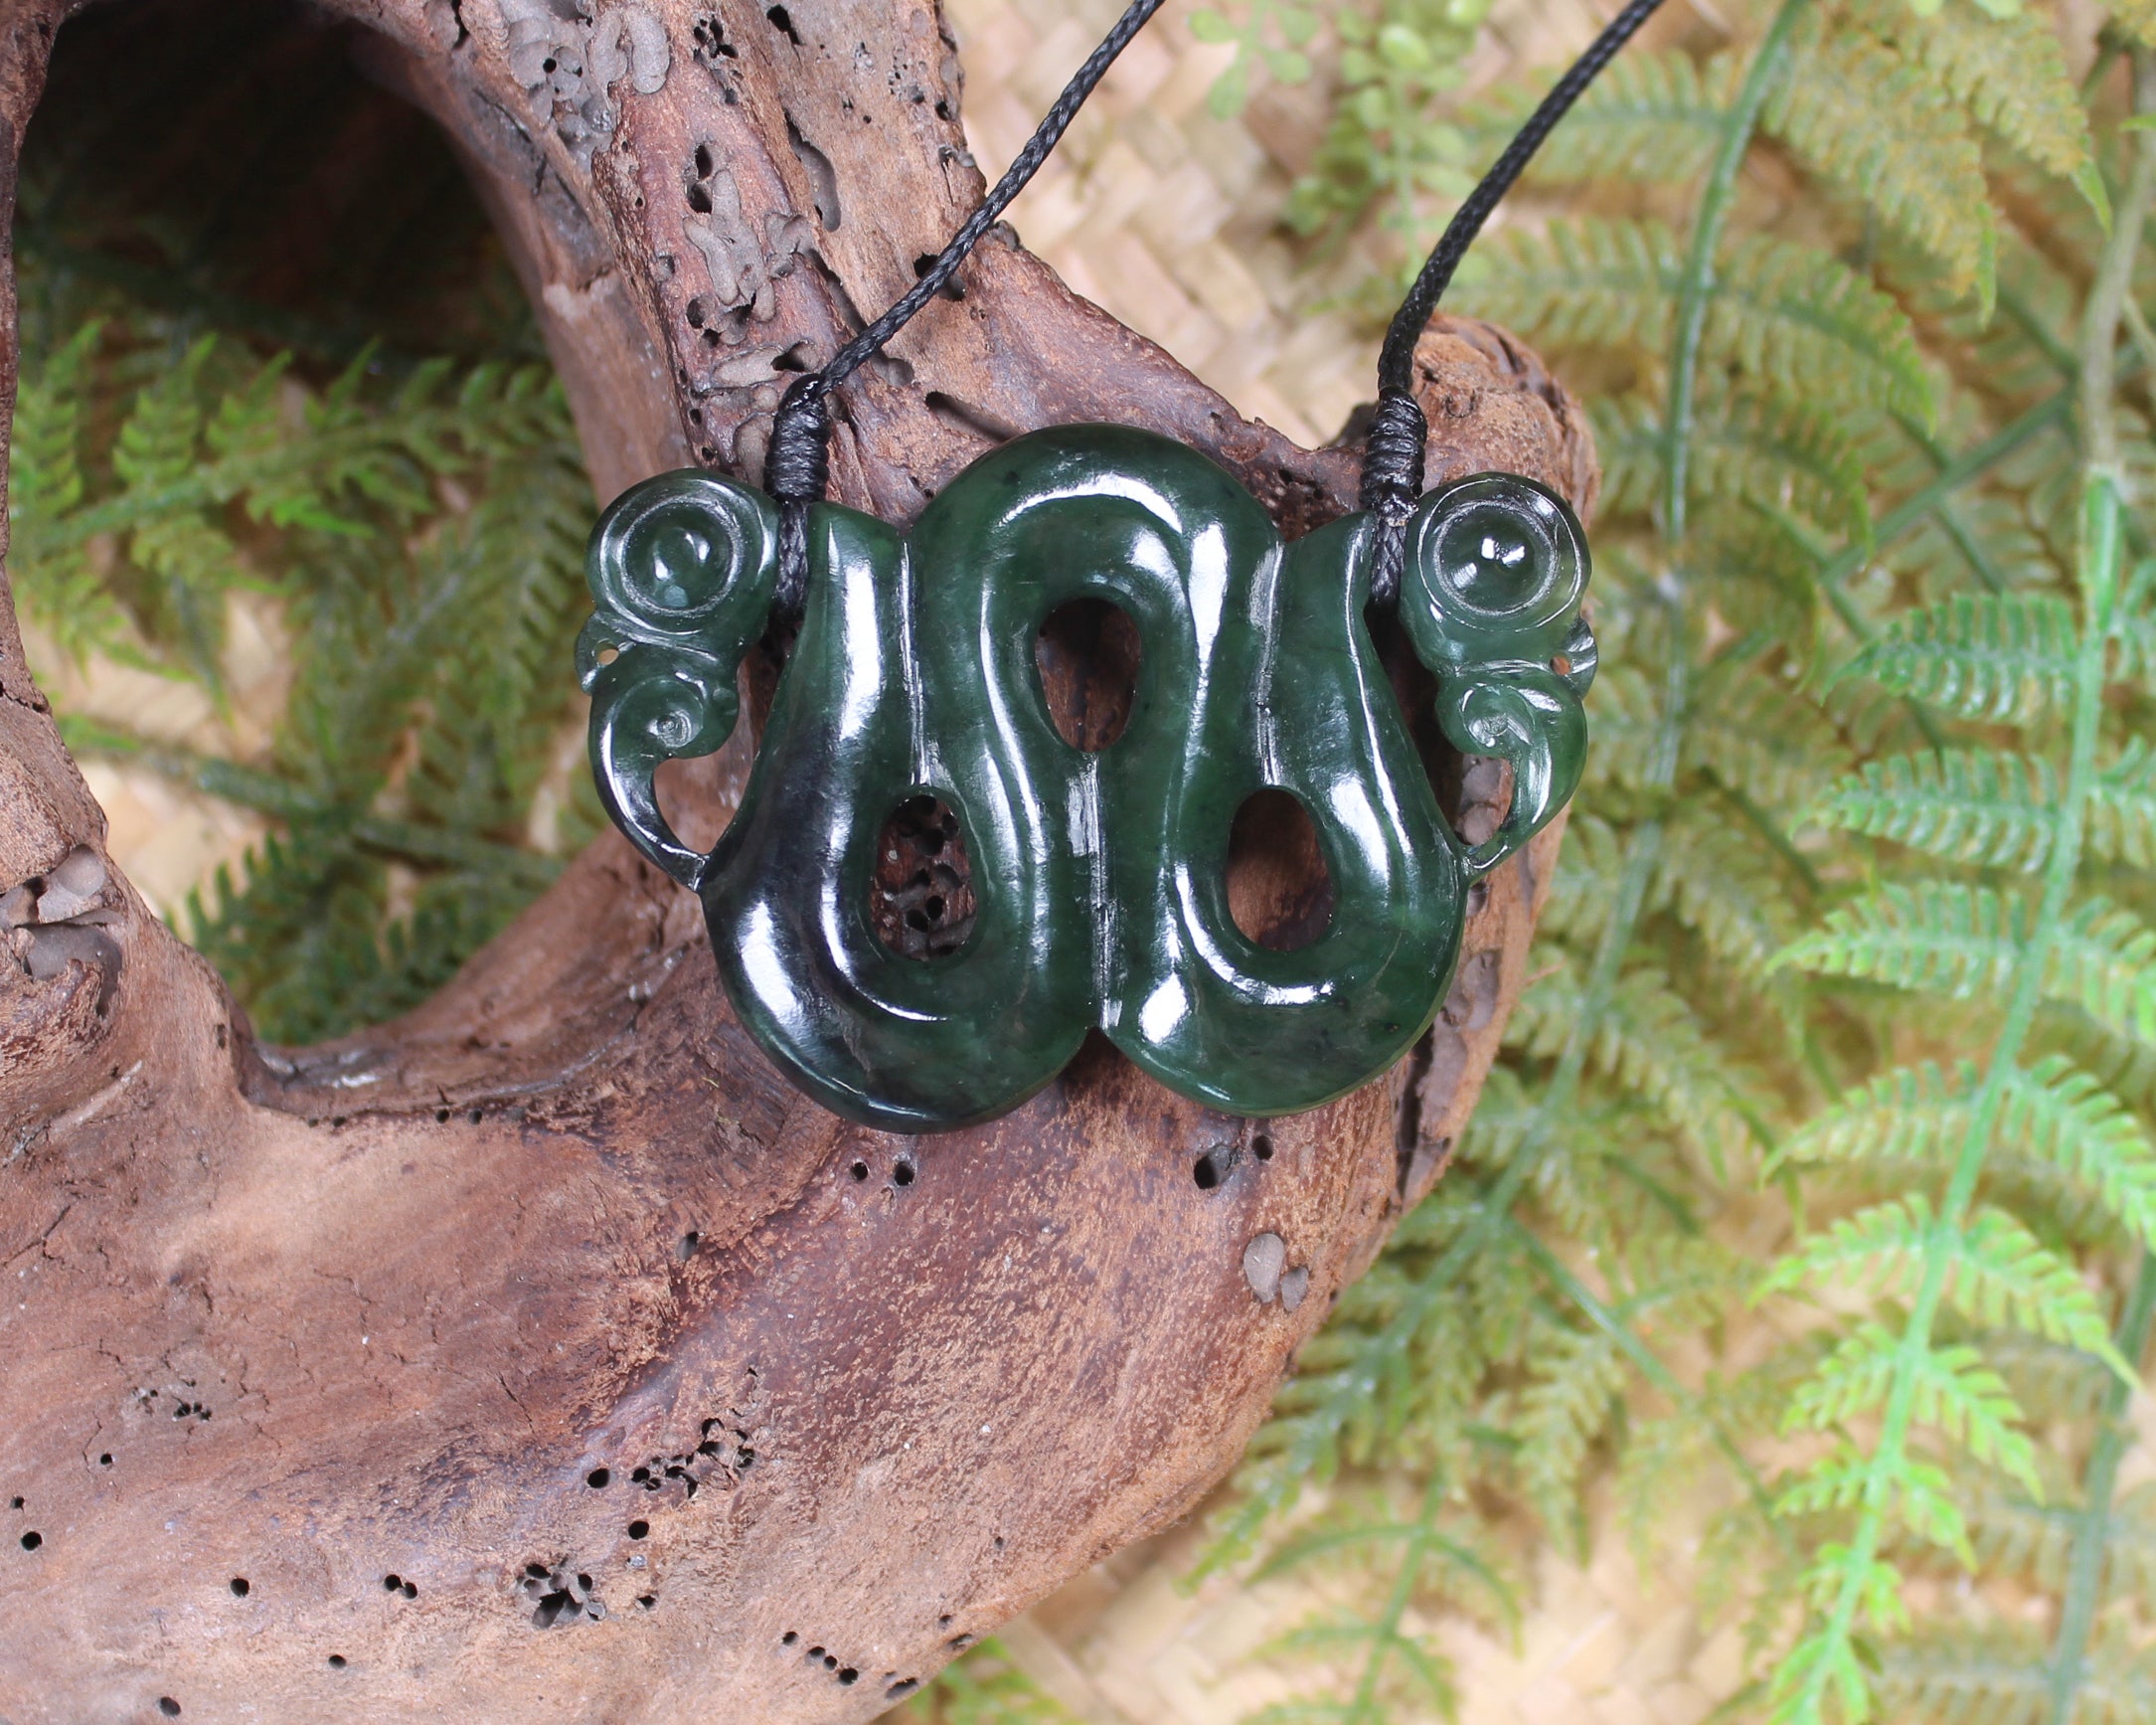 Pekapeka Pendant carved from Kawakawa Pounamu - NZ Greenstone